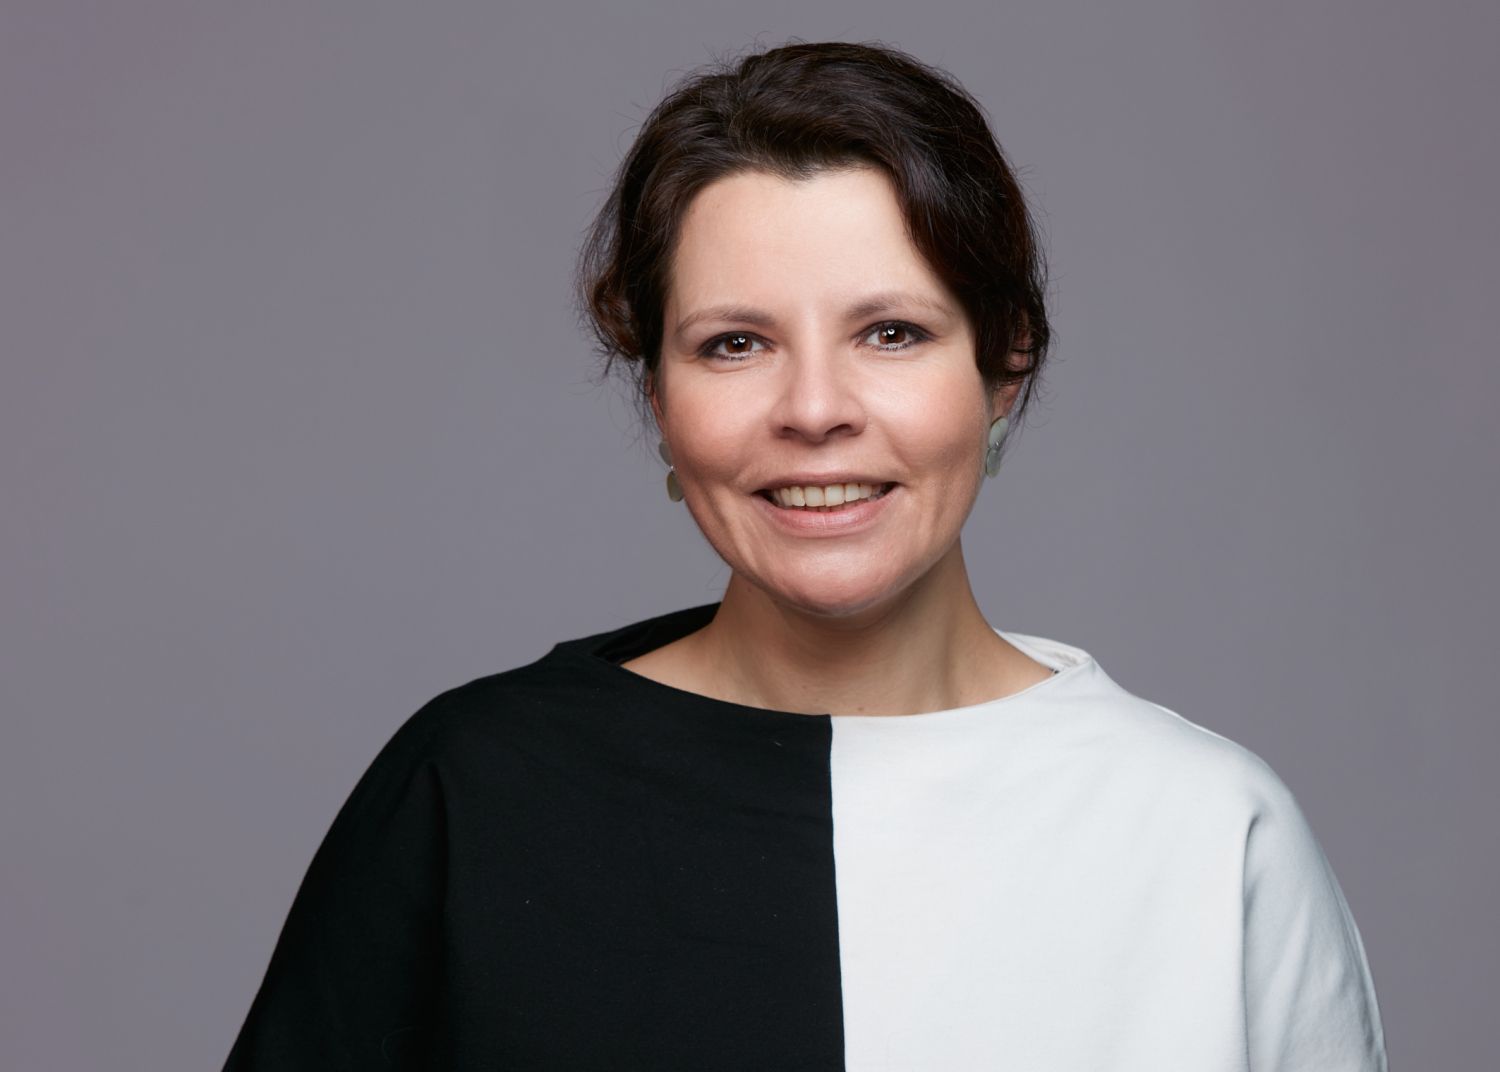 Marcia Schranner im Profil vor grauem Hintergrund mit schwarz-weißem Oberteil